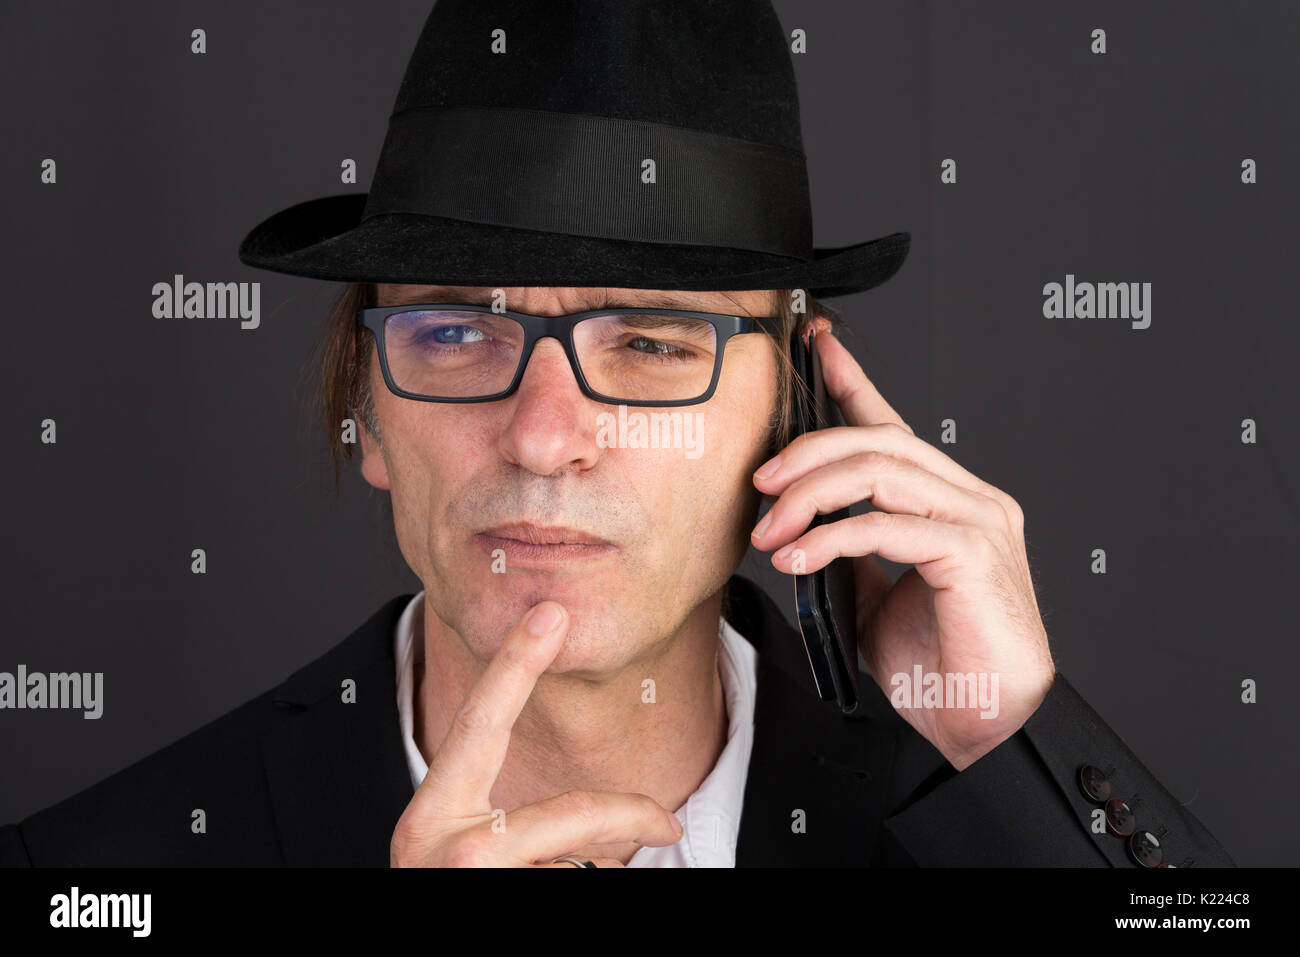 Portrait Moyen Âge européen man making a phone call Banque D'Images